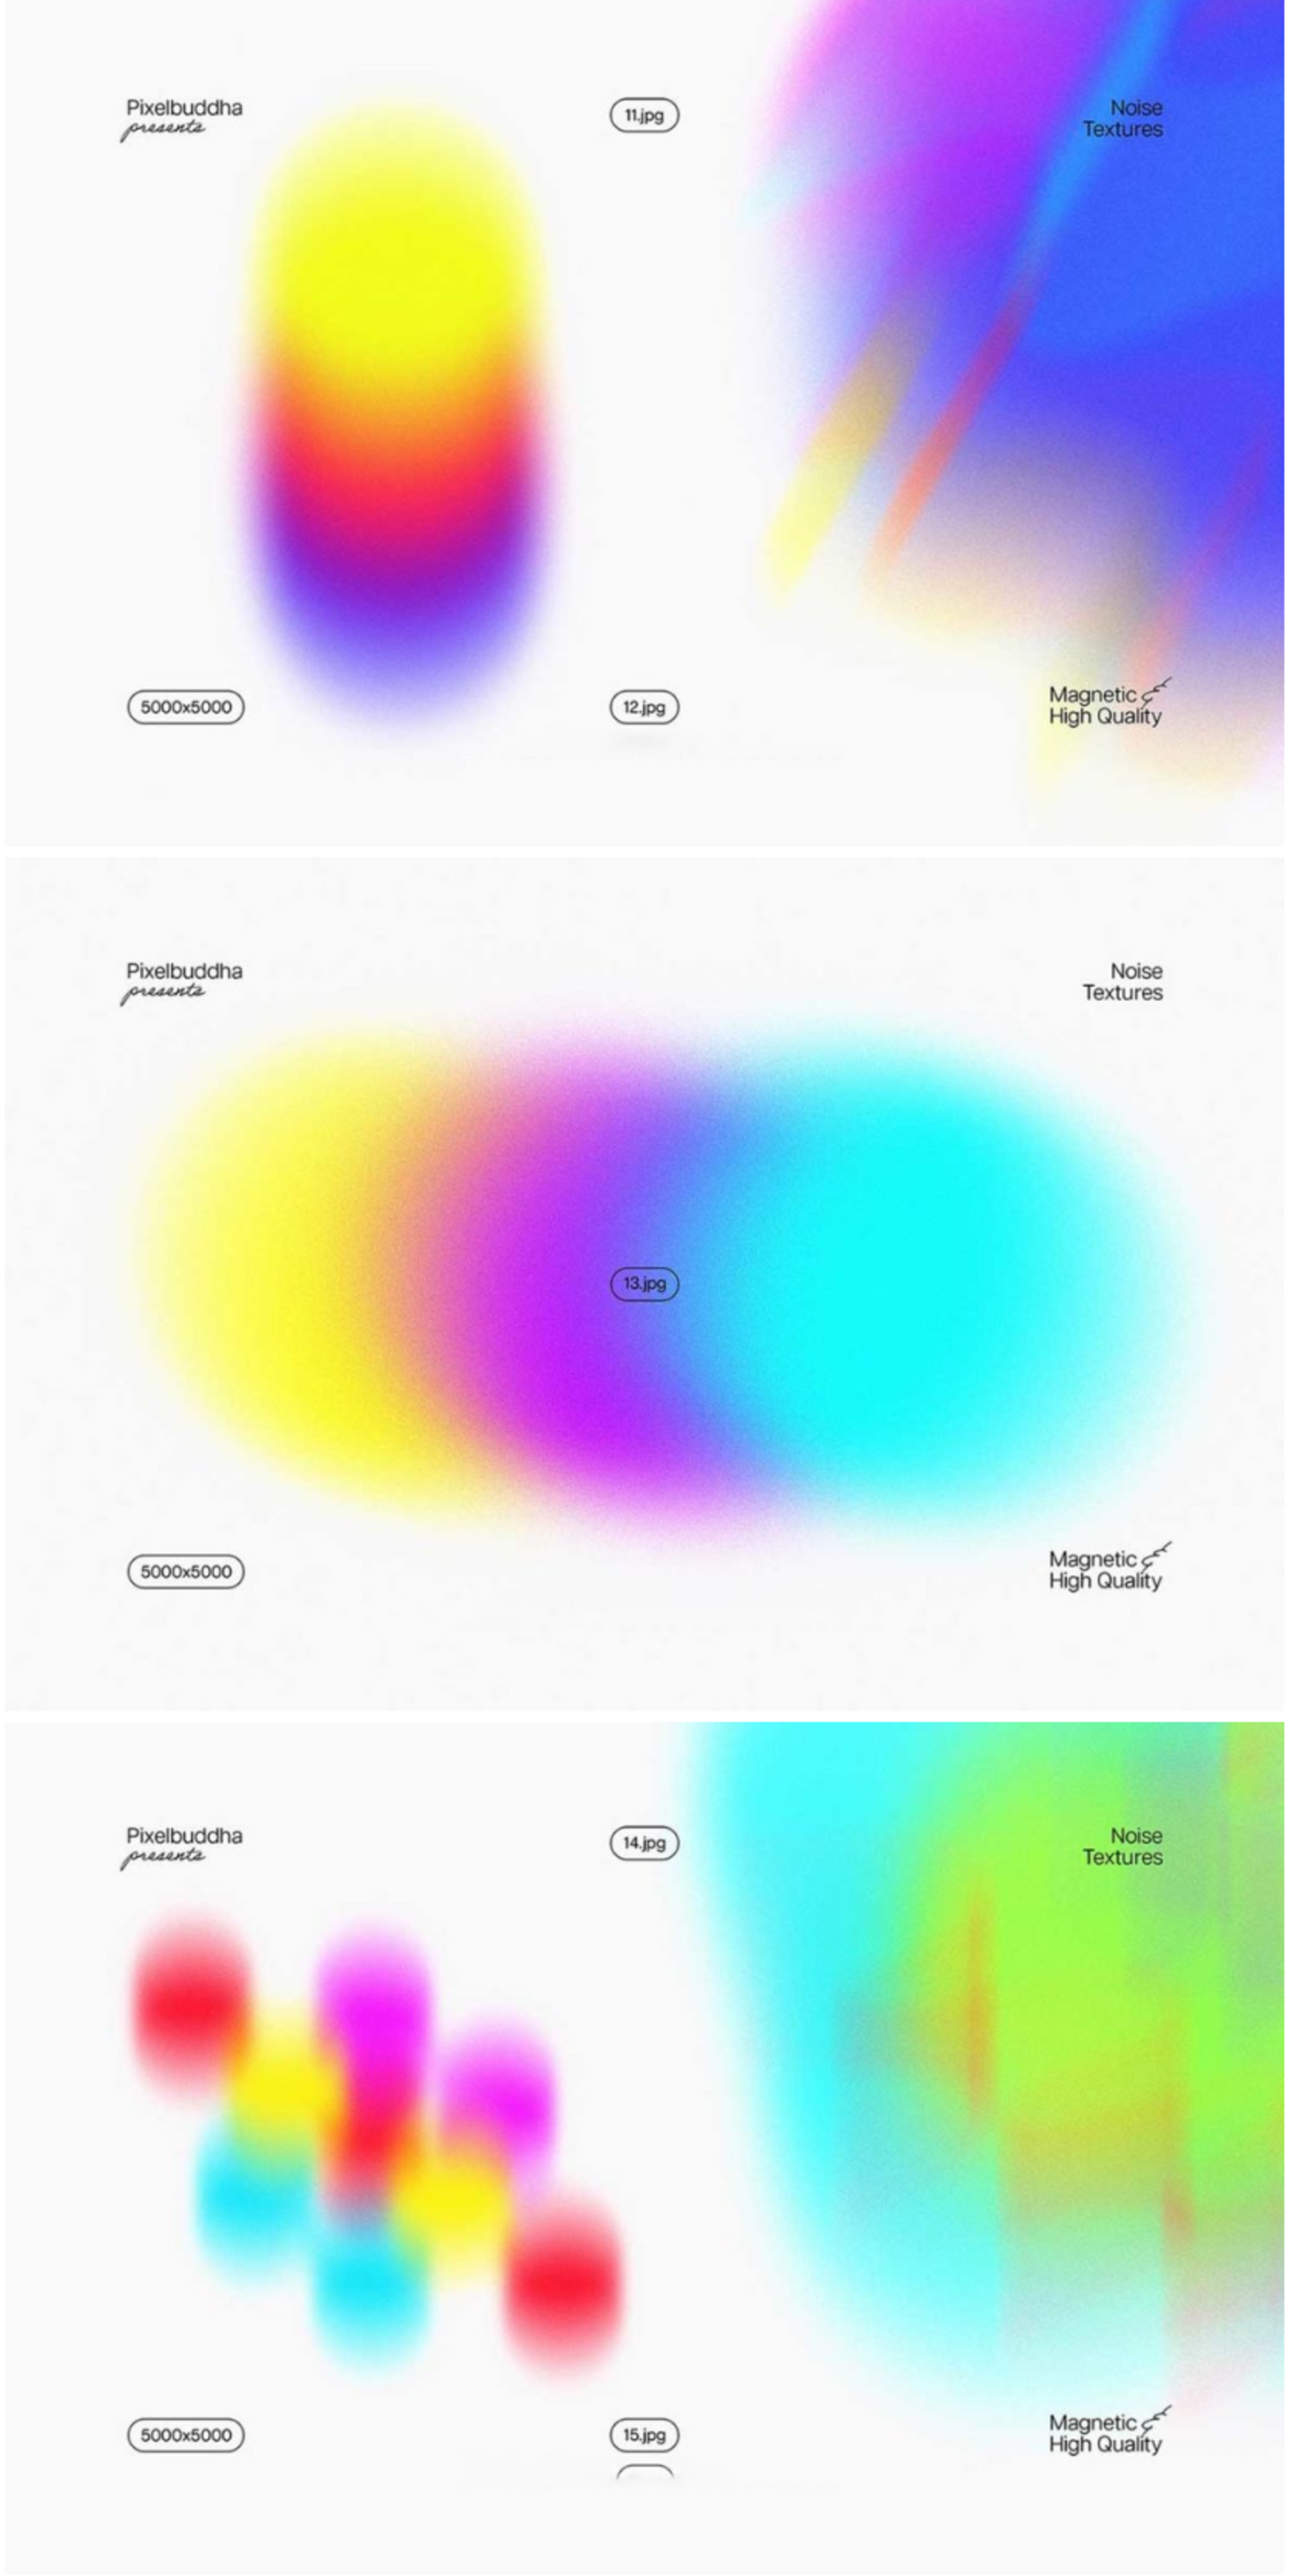 5384 渐变色融合模糊抽象图形的纹理背景图素材-Energy Abstract Textures Pack@GOOODME.COM